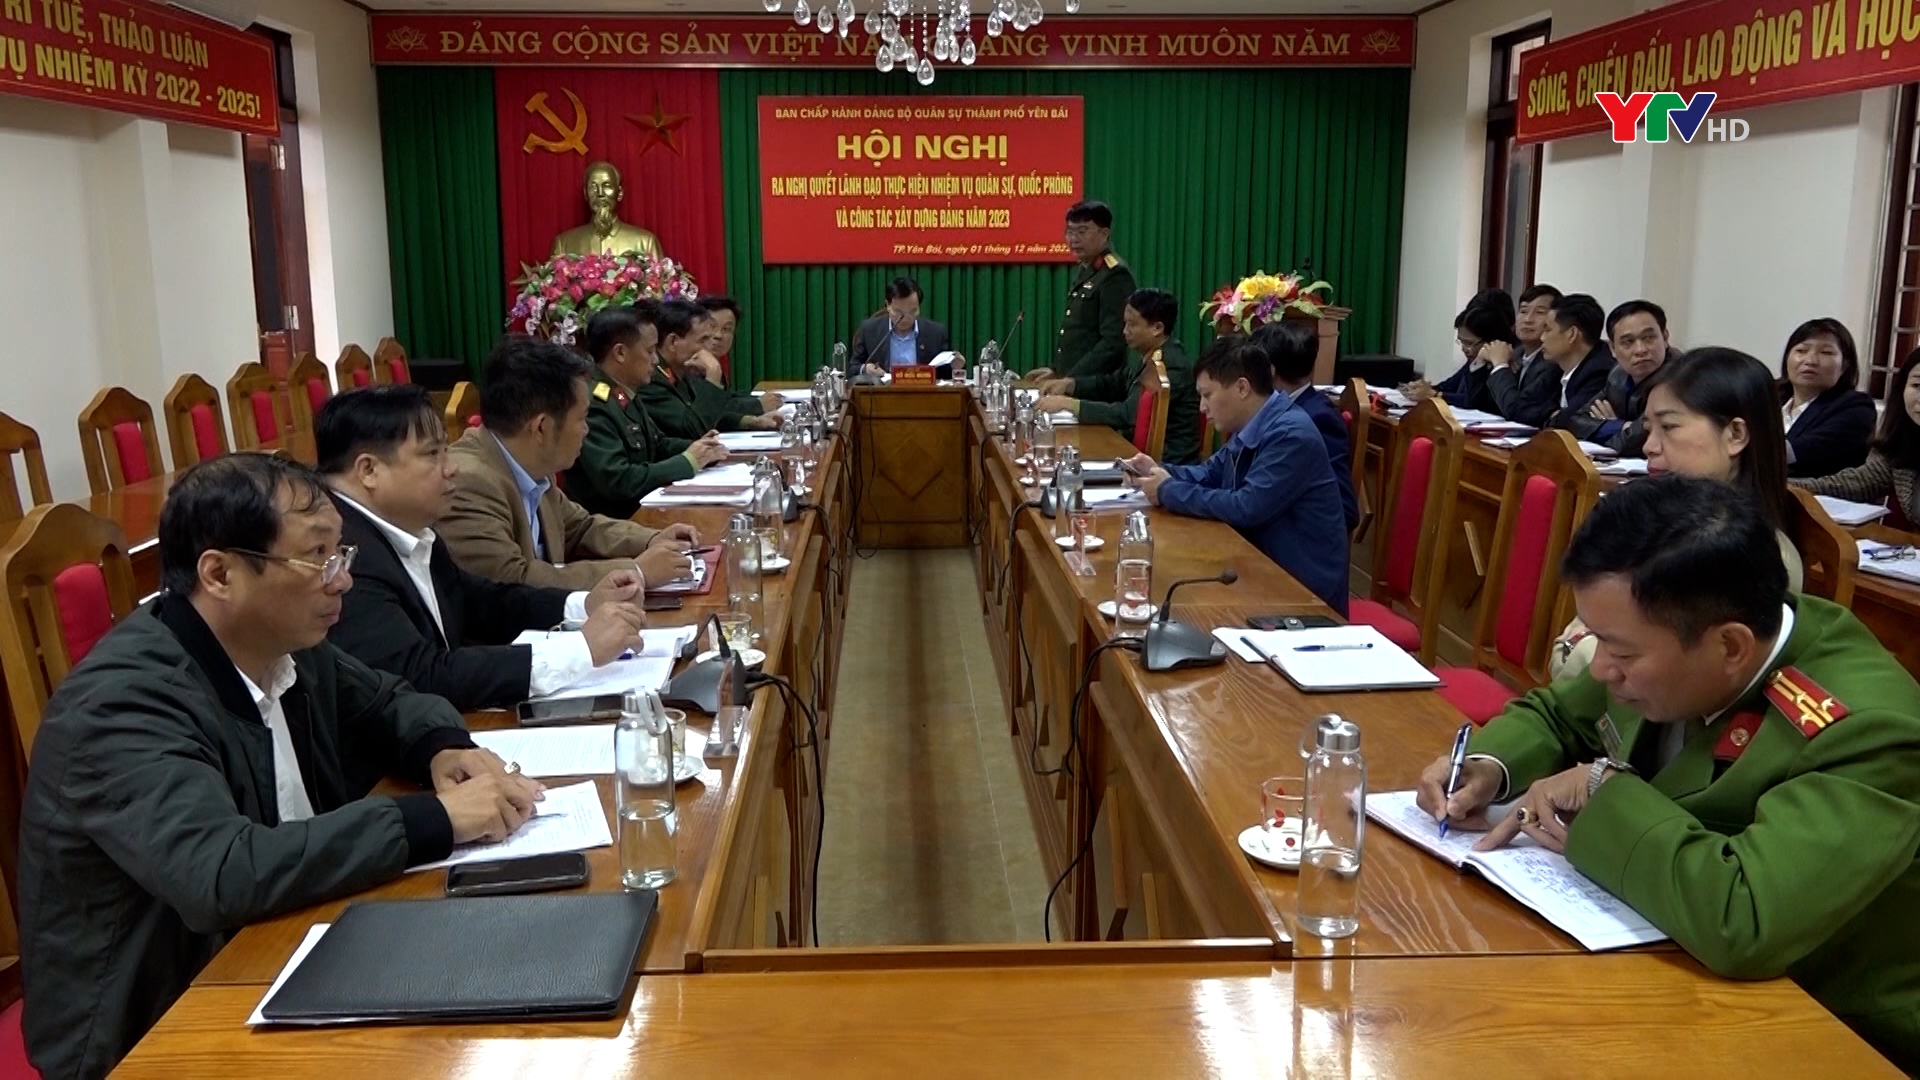 Đảng ủy Quân sự thành phố Yên Bái và Trạm Tấu ra Nghị quyết lãnh đạo nhiệm vụ quân sự, quốc phòng và công tác xây dựng Đảng năm 2023